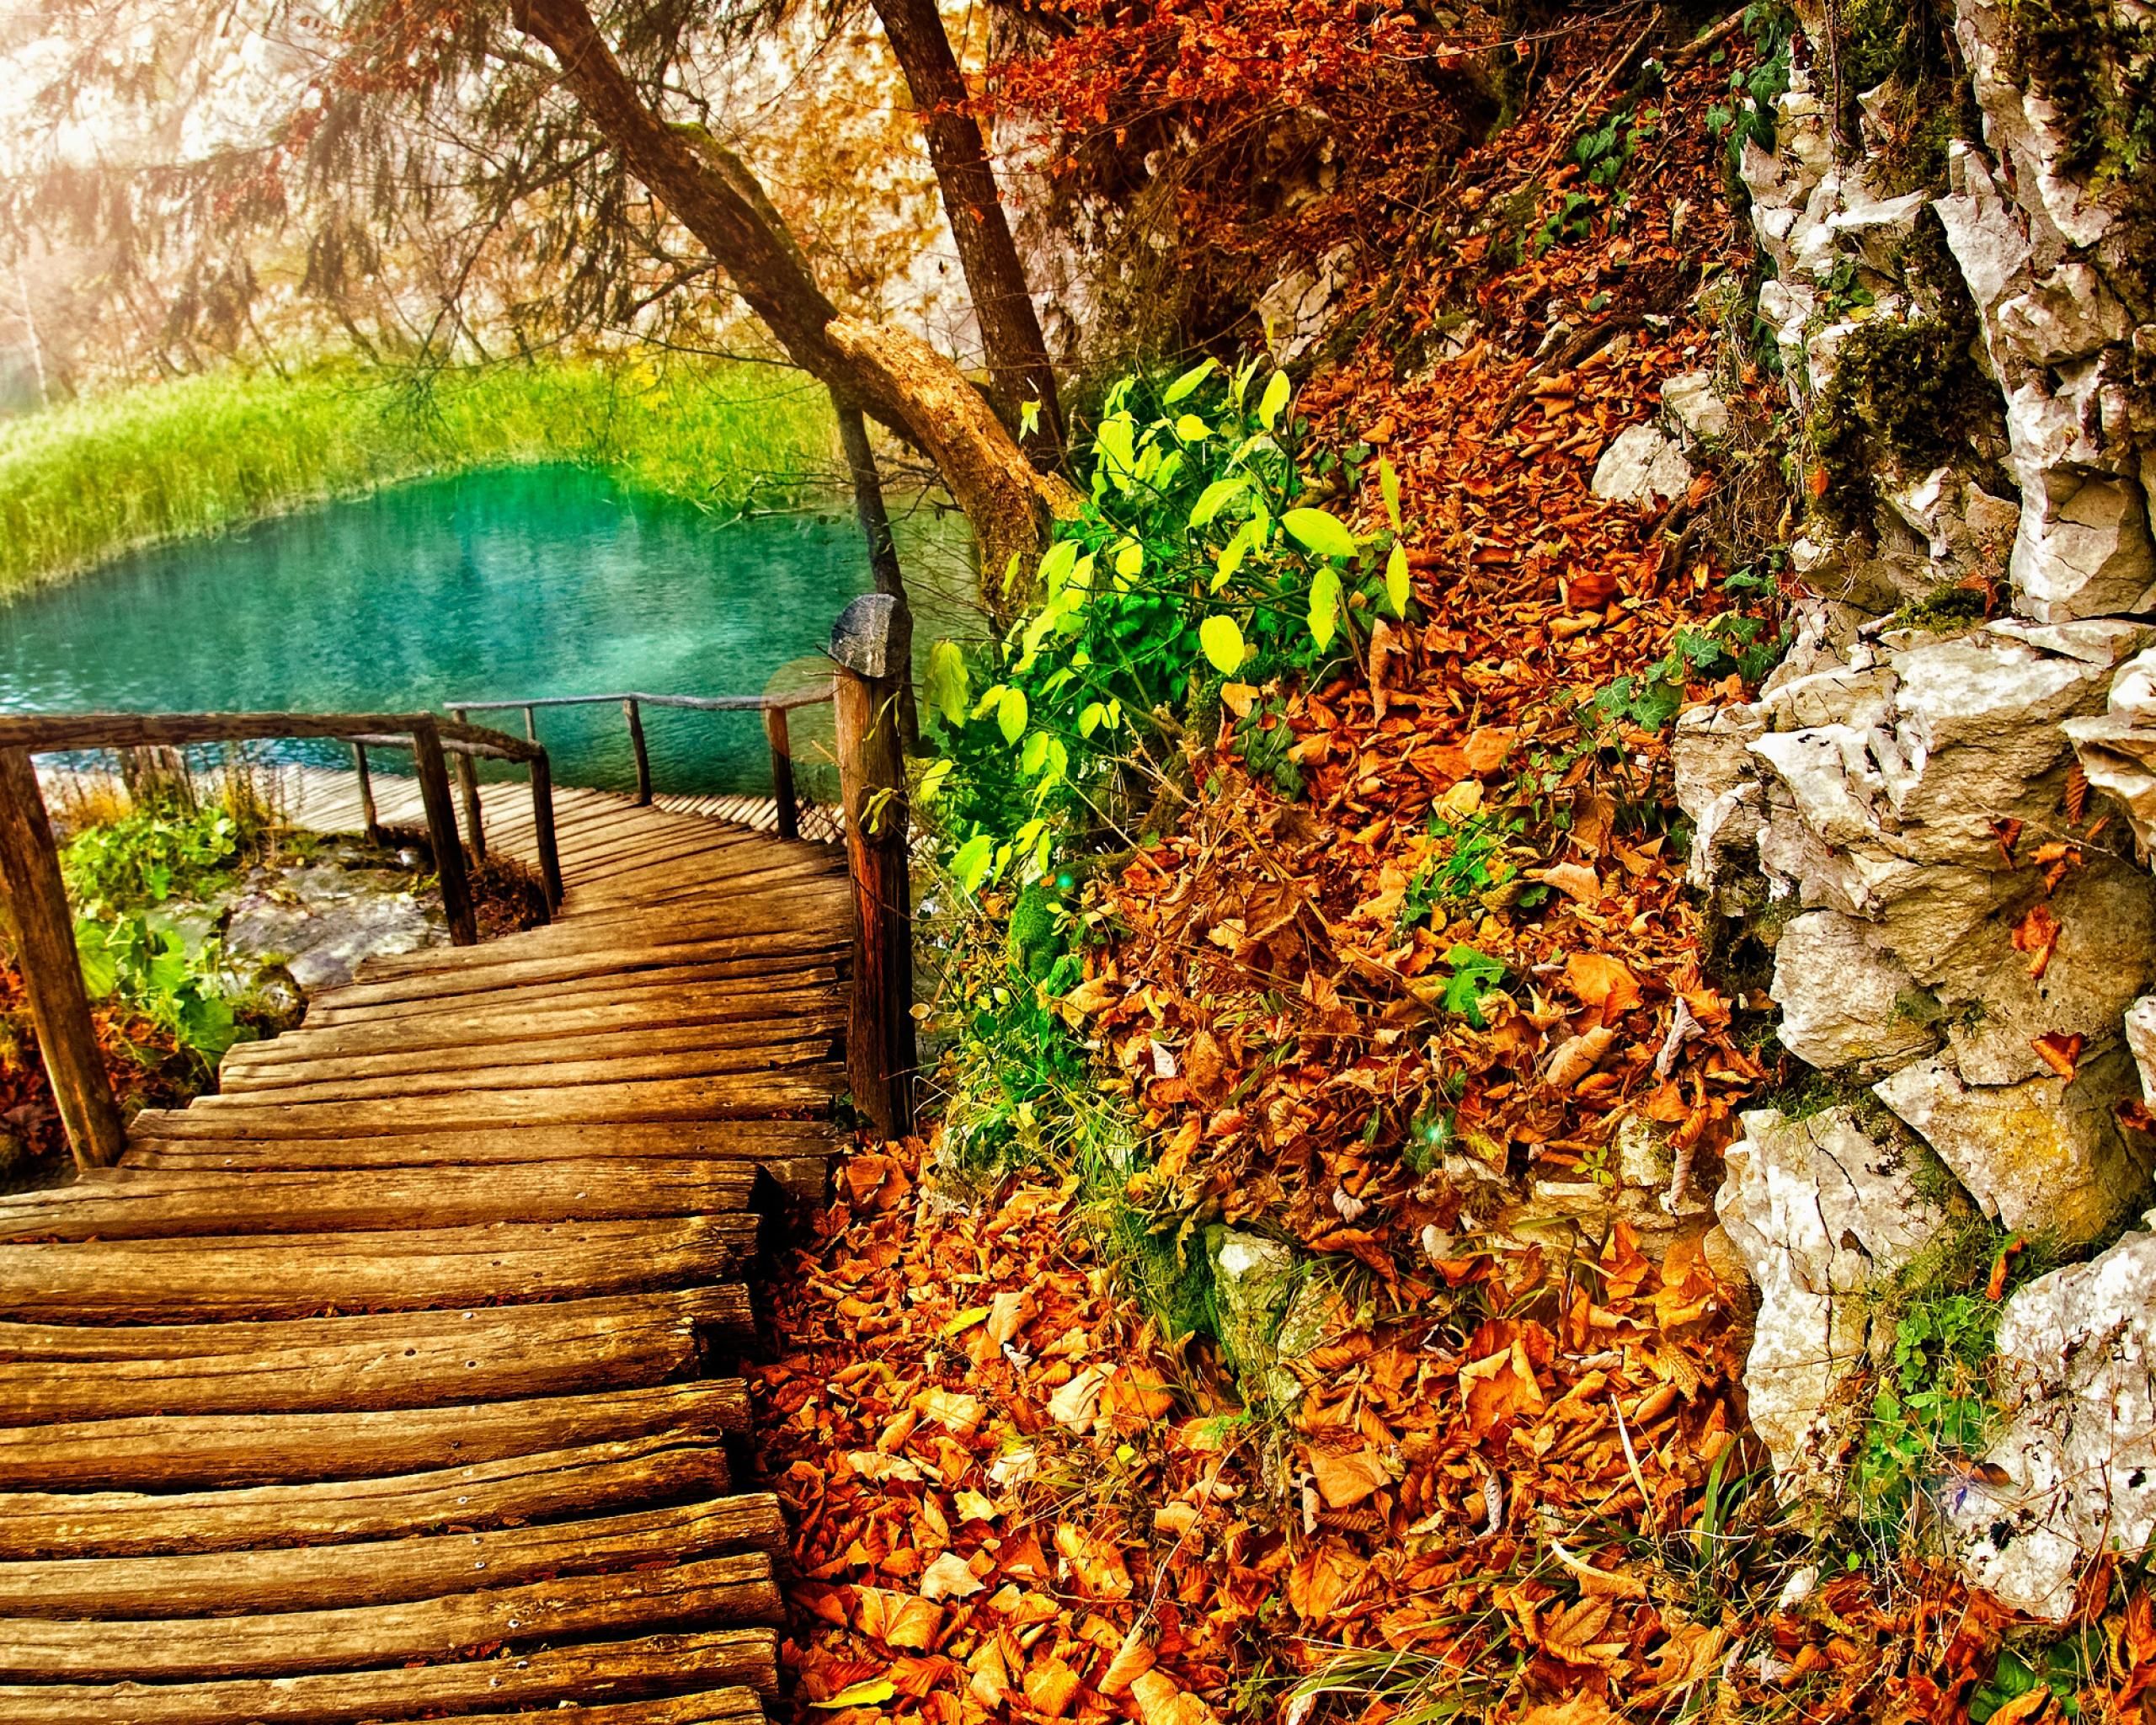 Скачать обои бесплатно Осень, Озеро, Сделано Человеком, Дощатый Настил картинка на рабочий стол ПК